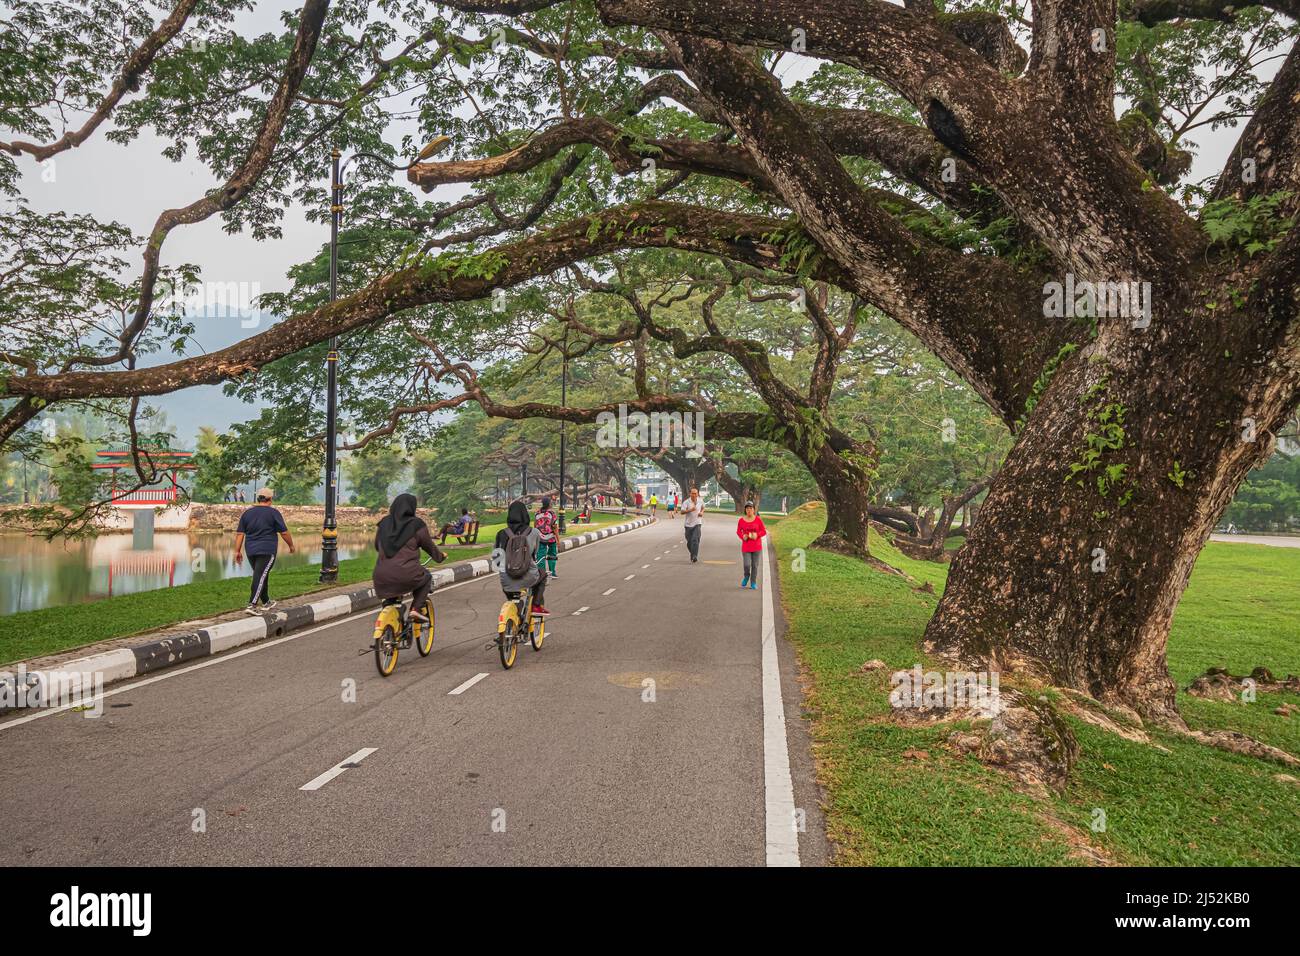 Alte Regenbäume mit ihren Ästen ragen über die Fußgängerstraße am Taiping Lake Garden oder dem Taman Tasik Taiping, dem ältesten Gartenpark Malaysias. Stockfoto